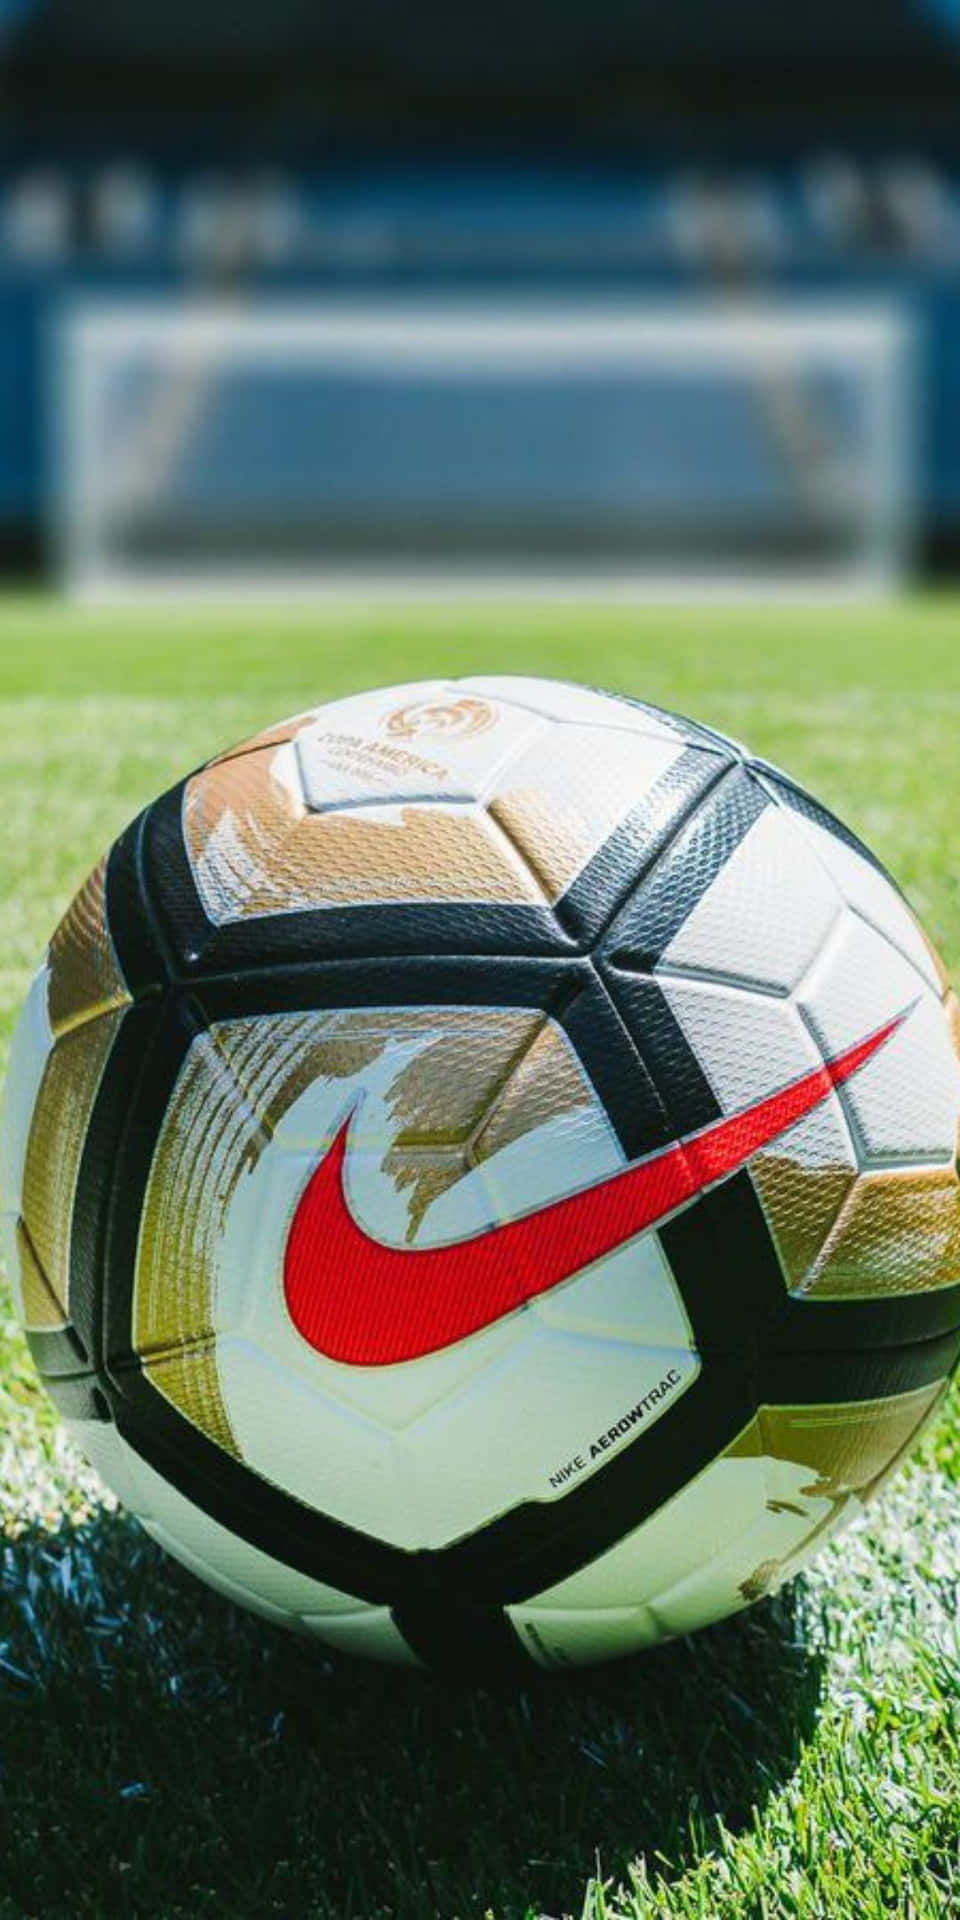 Fondode Pantalla De Fútbol Con Balón De Fútbol Y Logo Rojo De Nike Para El Móvil Pixel 3.